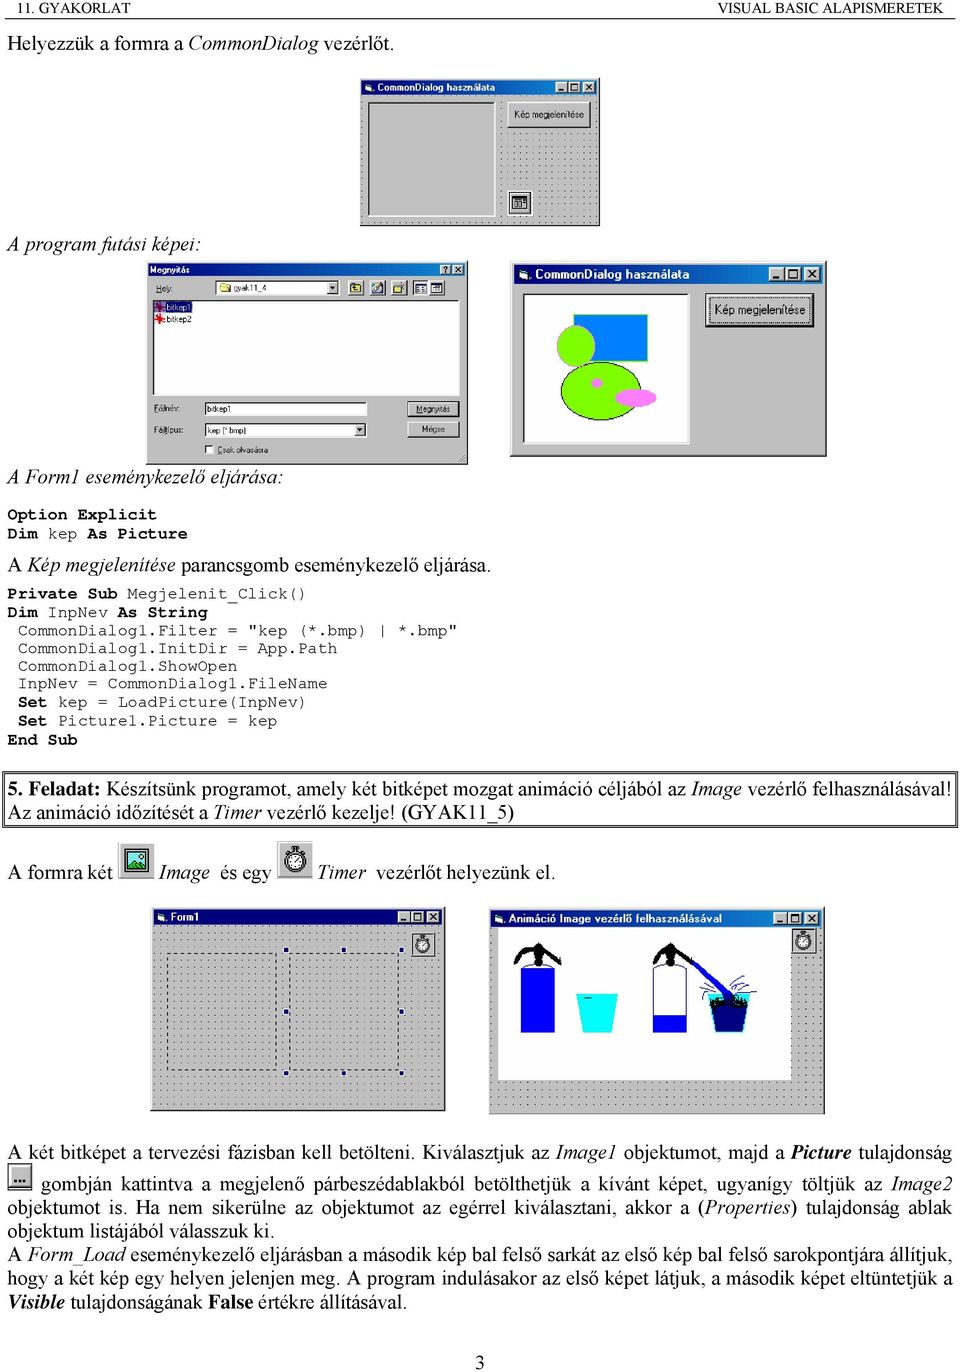 FileName Set kep = LoadPicture(InpNev) Set Picture1.Picture = kep 5. Feladat: Készítsünk programot, amely két bitképet mozgat animáció céljából az Image vezérlő felhasználásával!